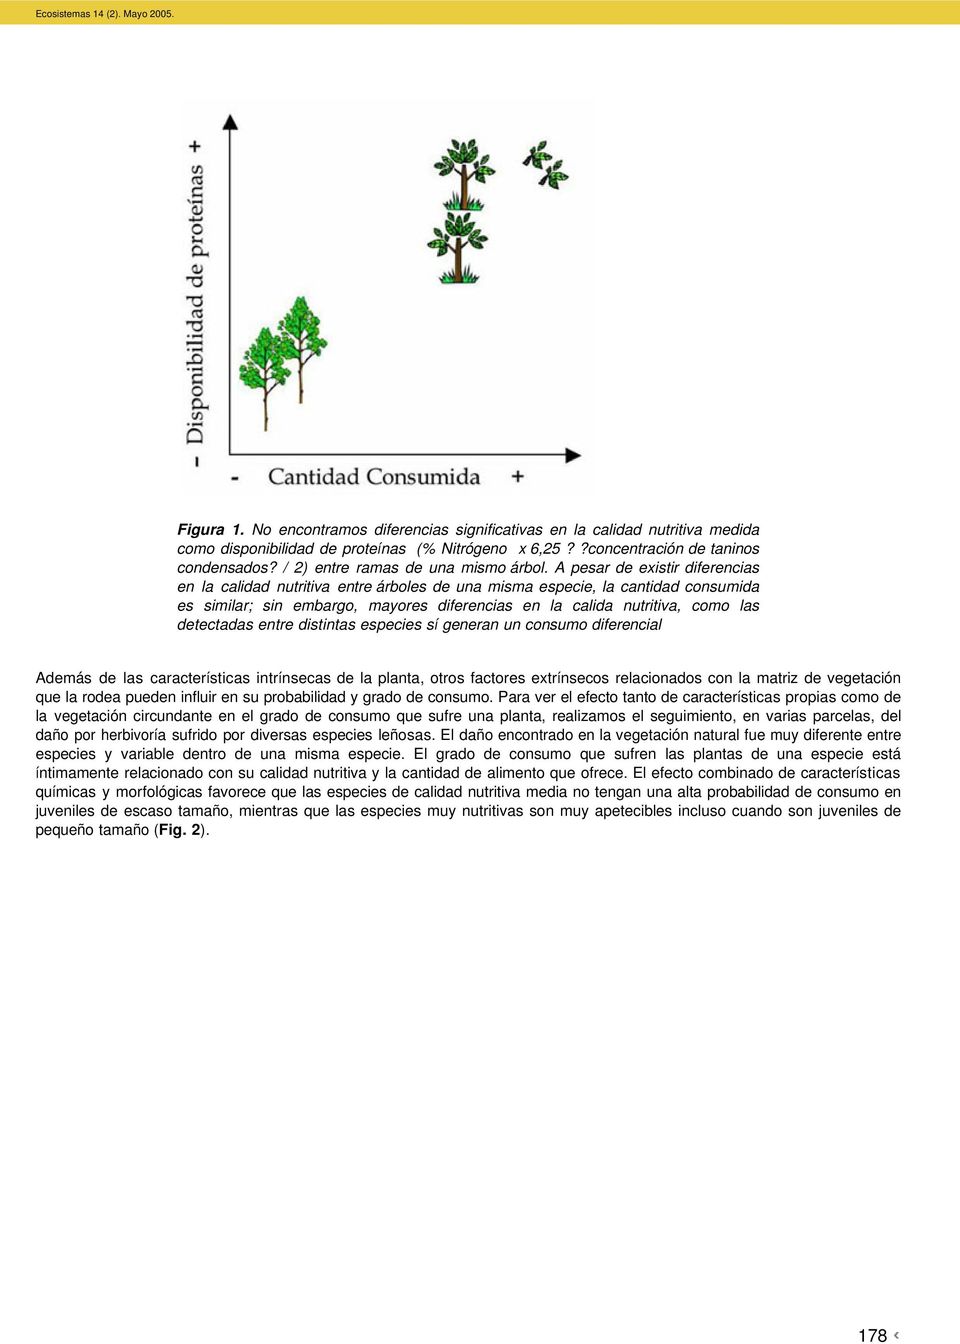 A pesar de existir diferencias en la calidad nutritiva entre árboles de una misma especie, la cantidad consumida es similar; sin embargo, mayores diferencias en la calida nutritiva, como las